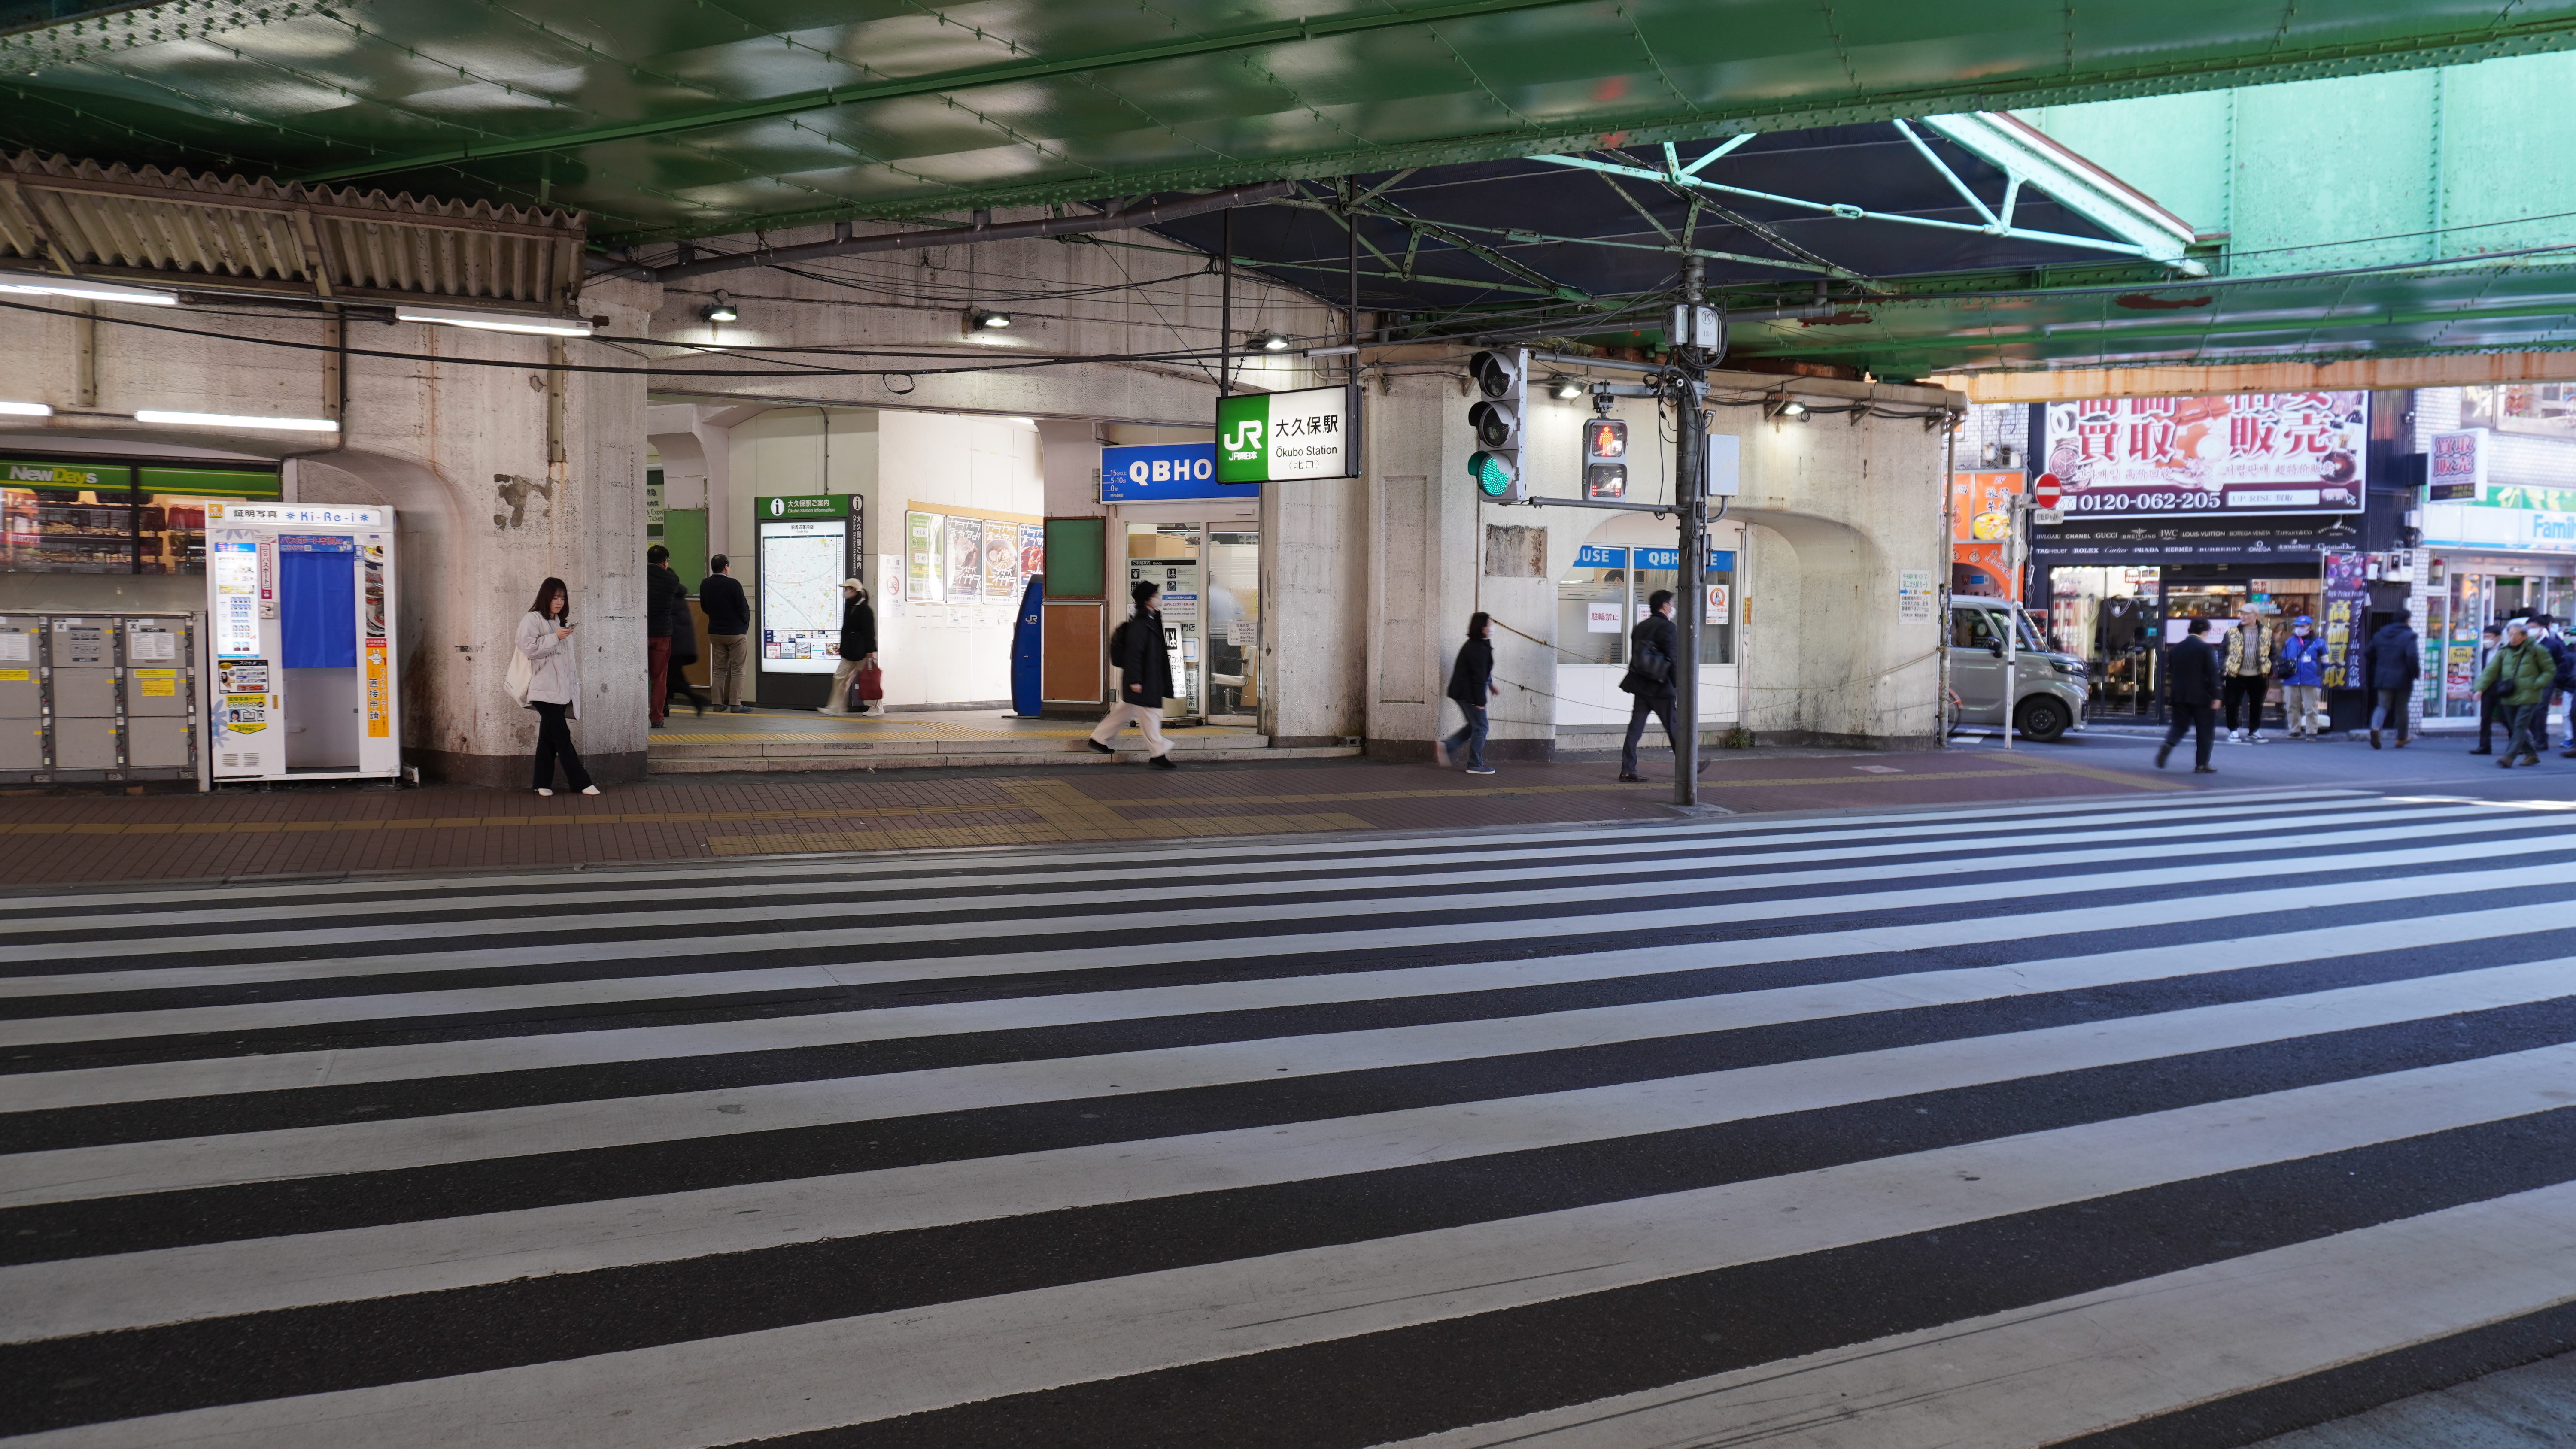 Hanya berjarak 1 menit berjalan kaki dari pintu keluar Utara (北口) stasiun Okubo, toko ini mudah ditemukan.